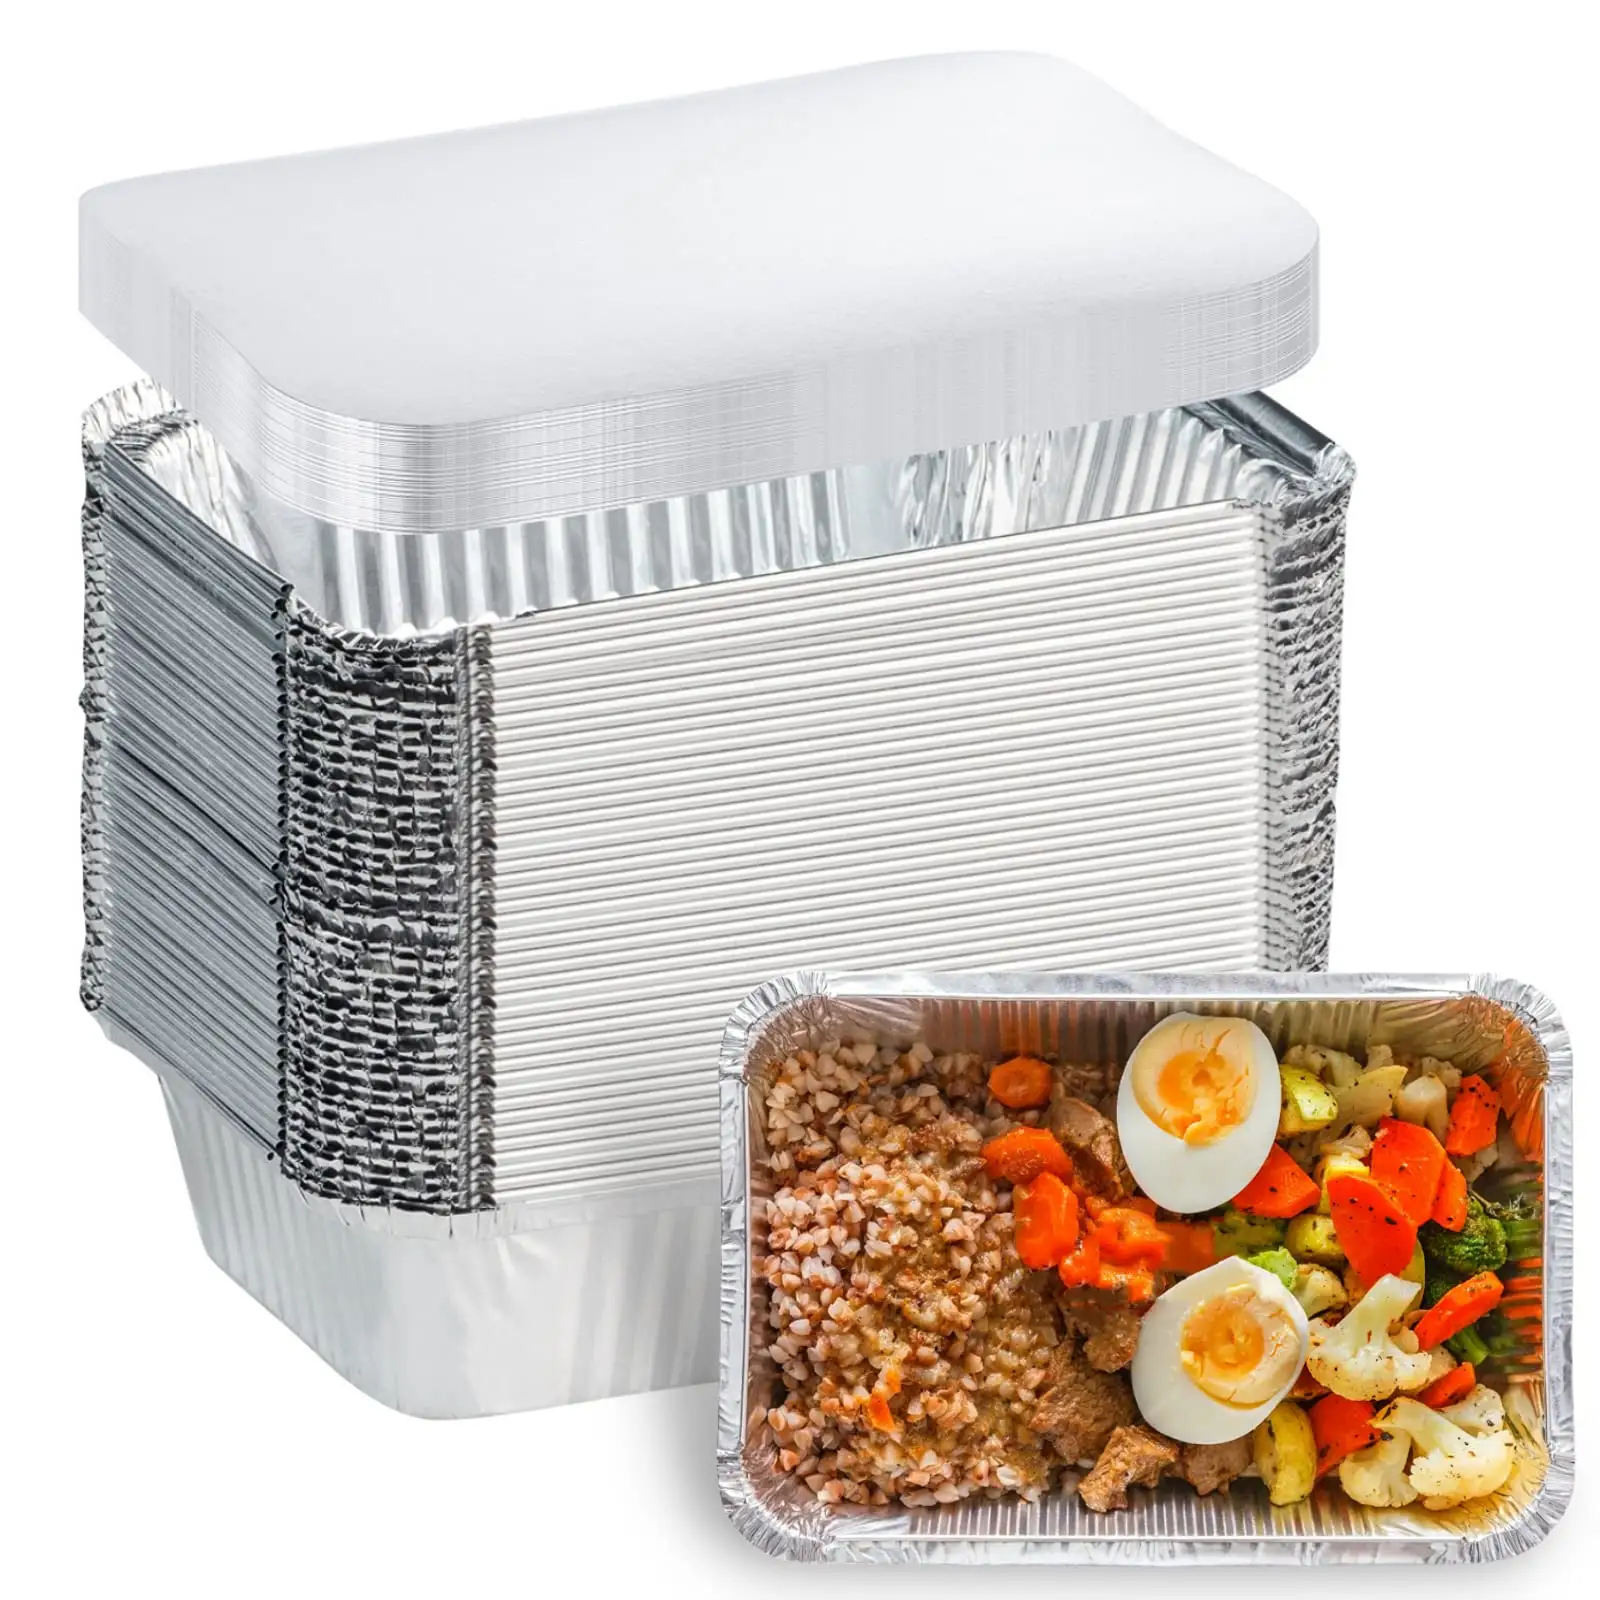 Imutfak alüminyum tavalar konteyner kapaklı tek kullanımlık teneke folyo tavalar pişirme yemek hazırlık paket alüminyum folyo konteynerler için